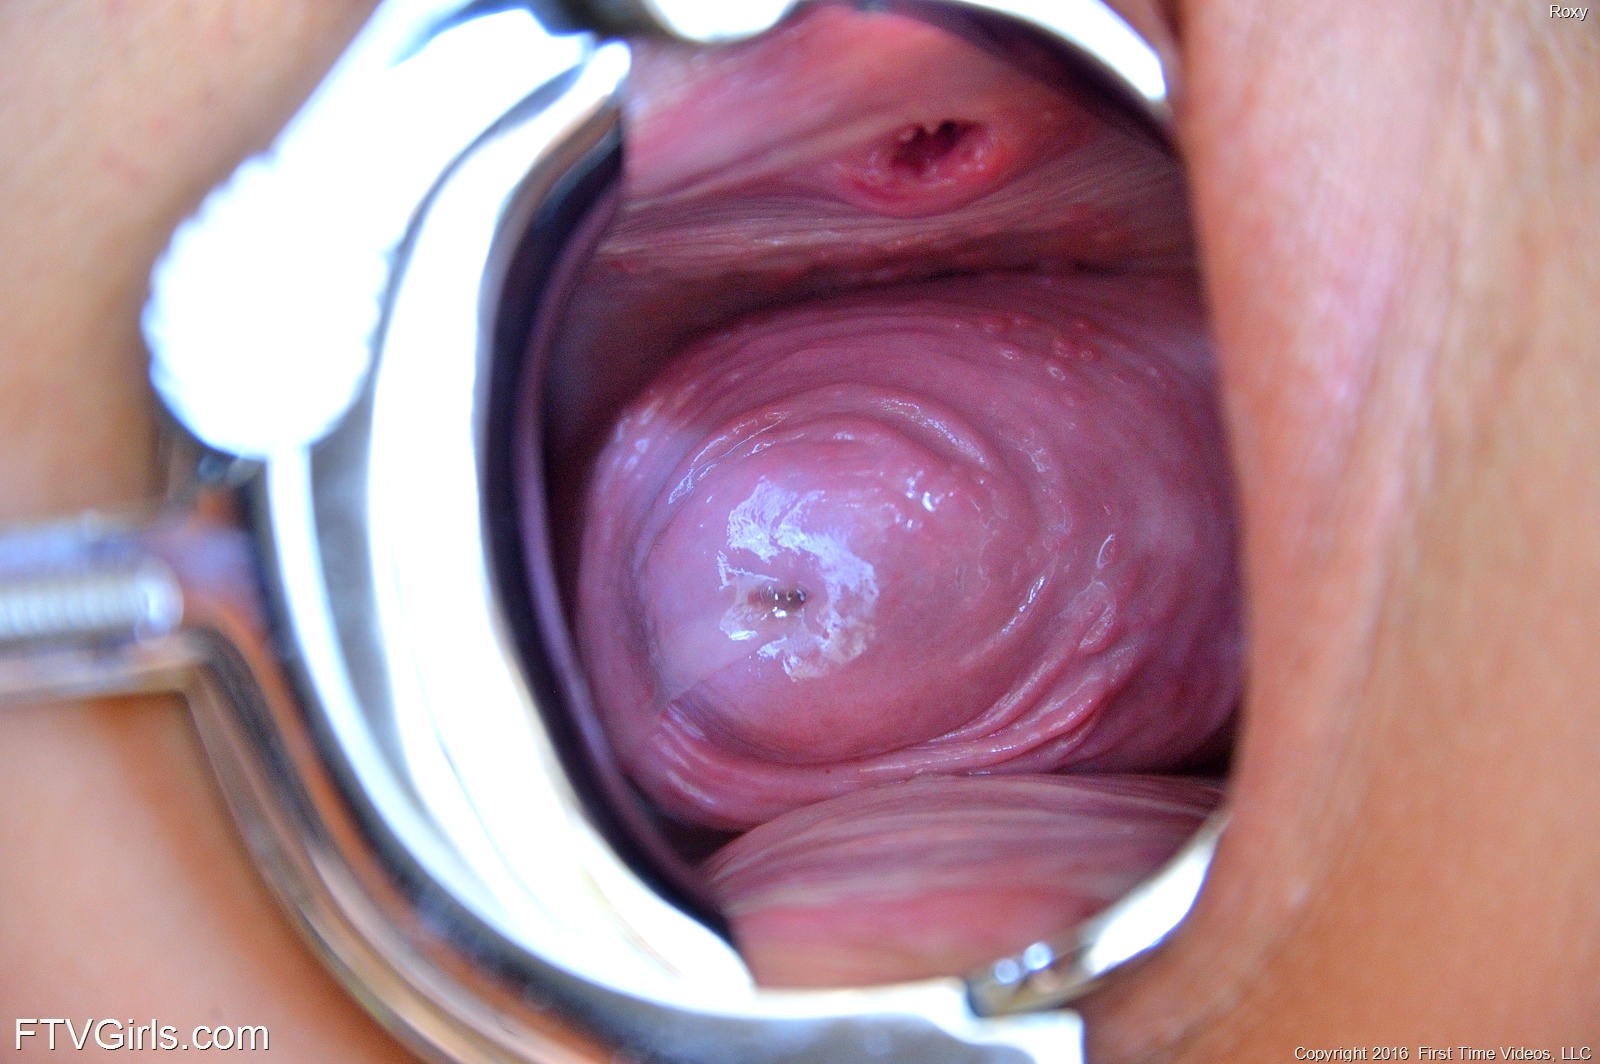 Lick cervix best adult free images